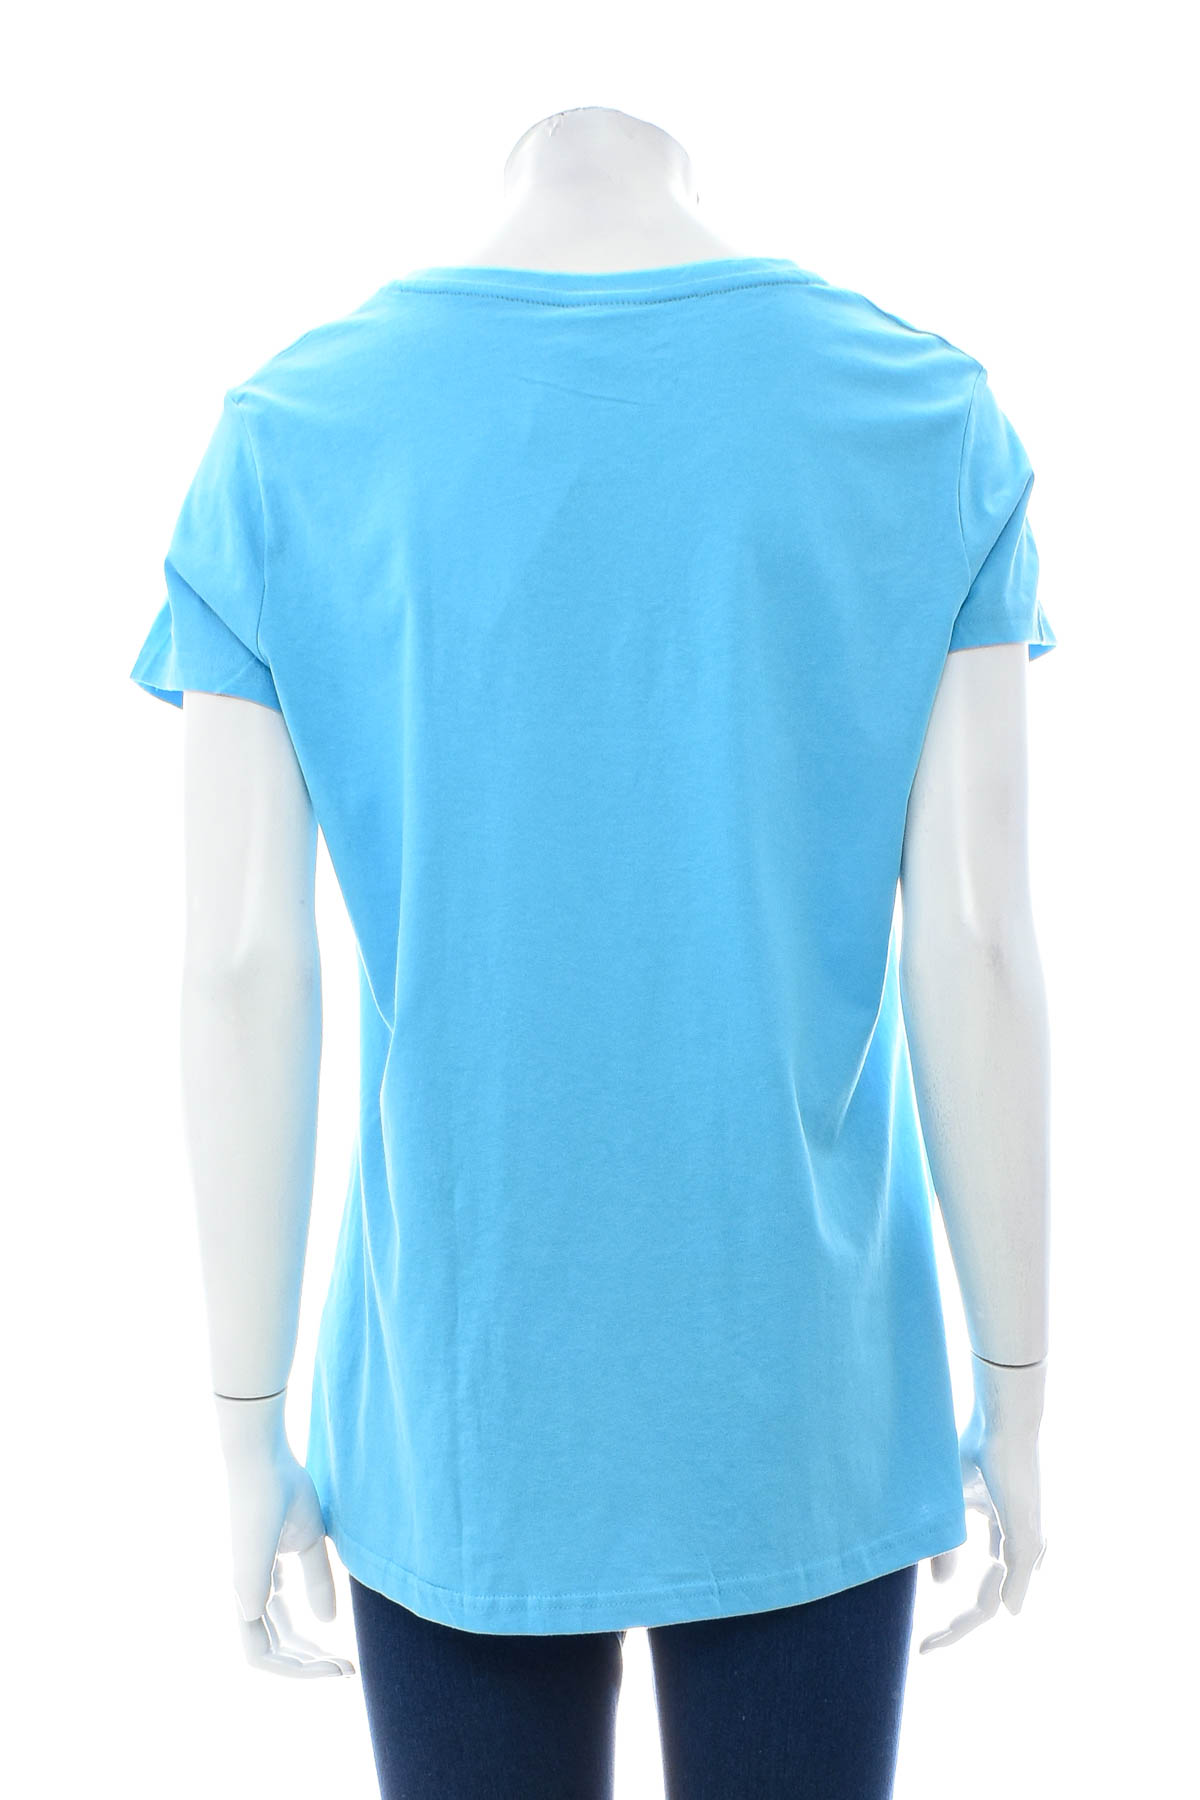 Γυναικείο μπλουζάκι - ElleNor - 1